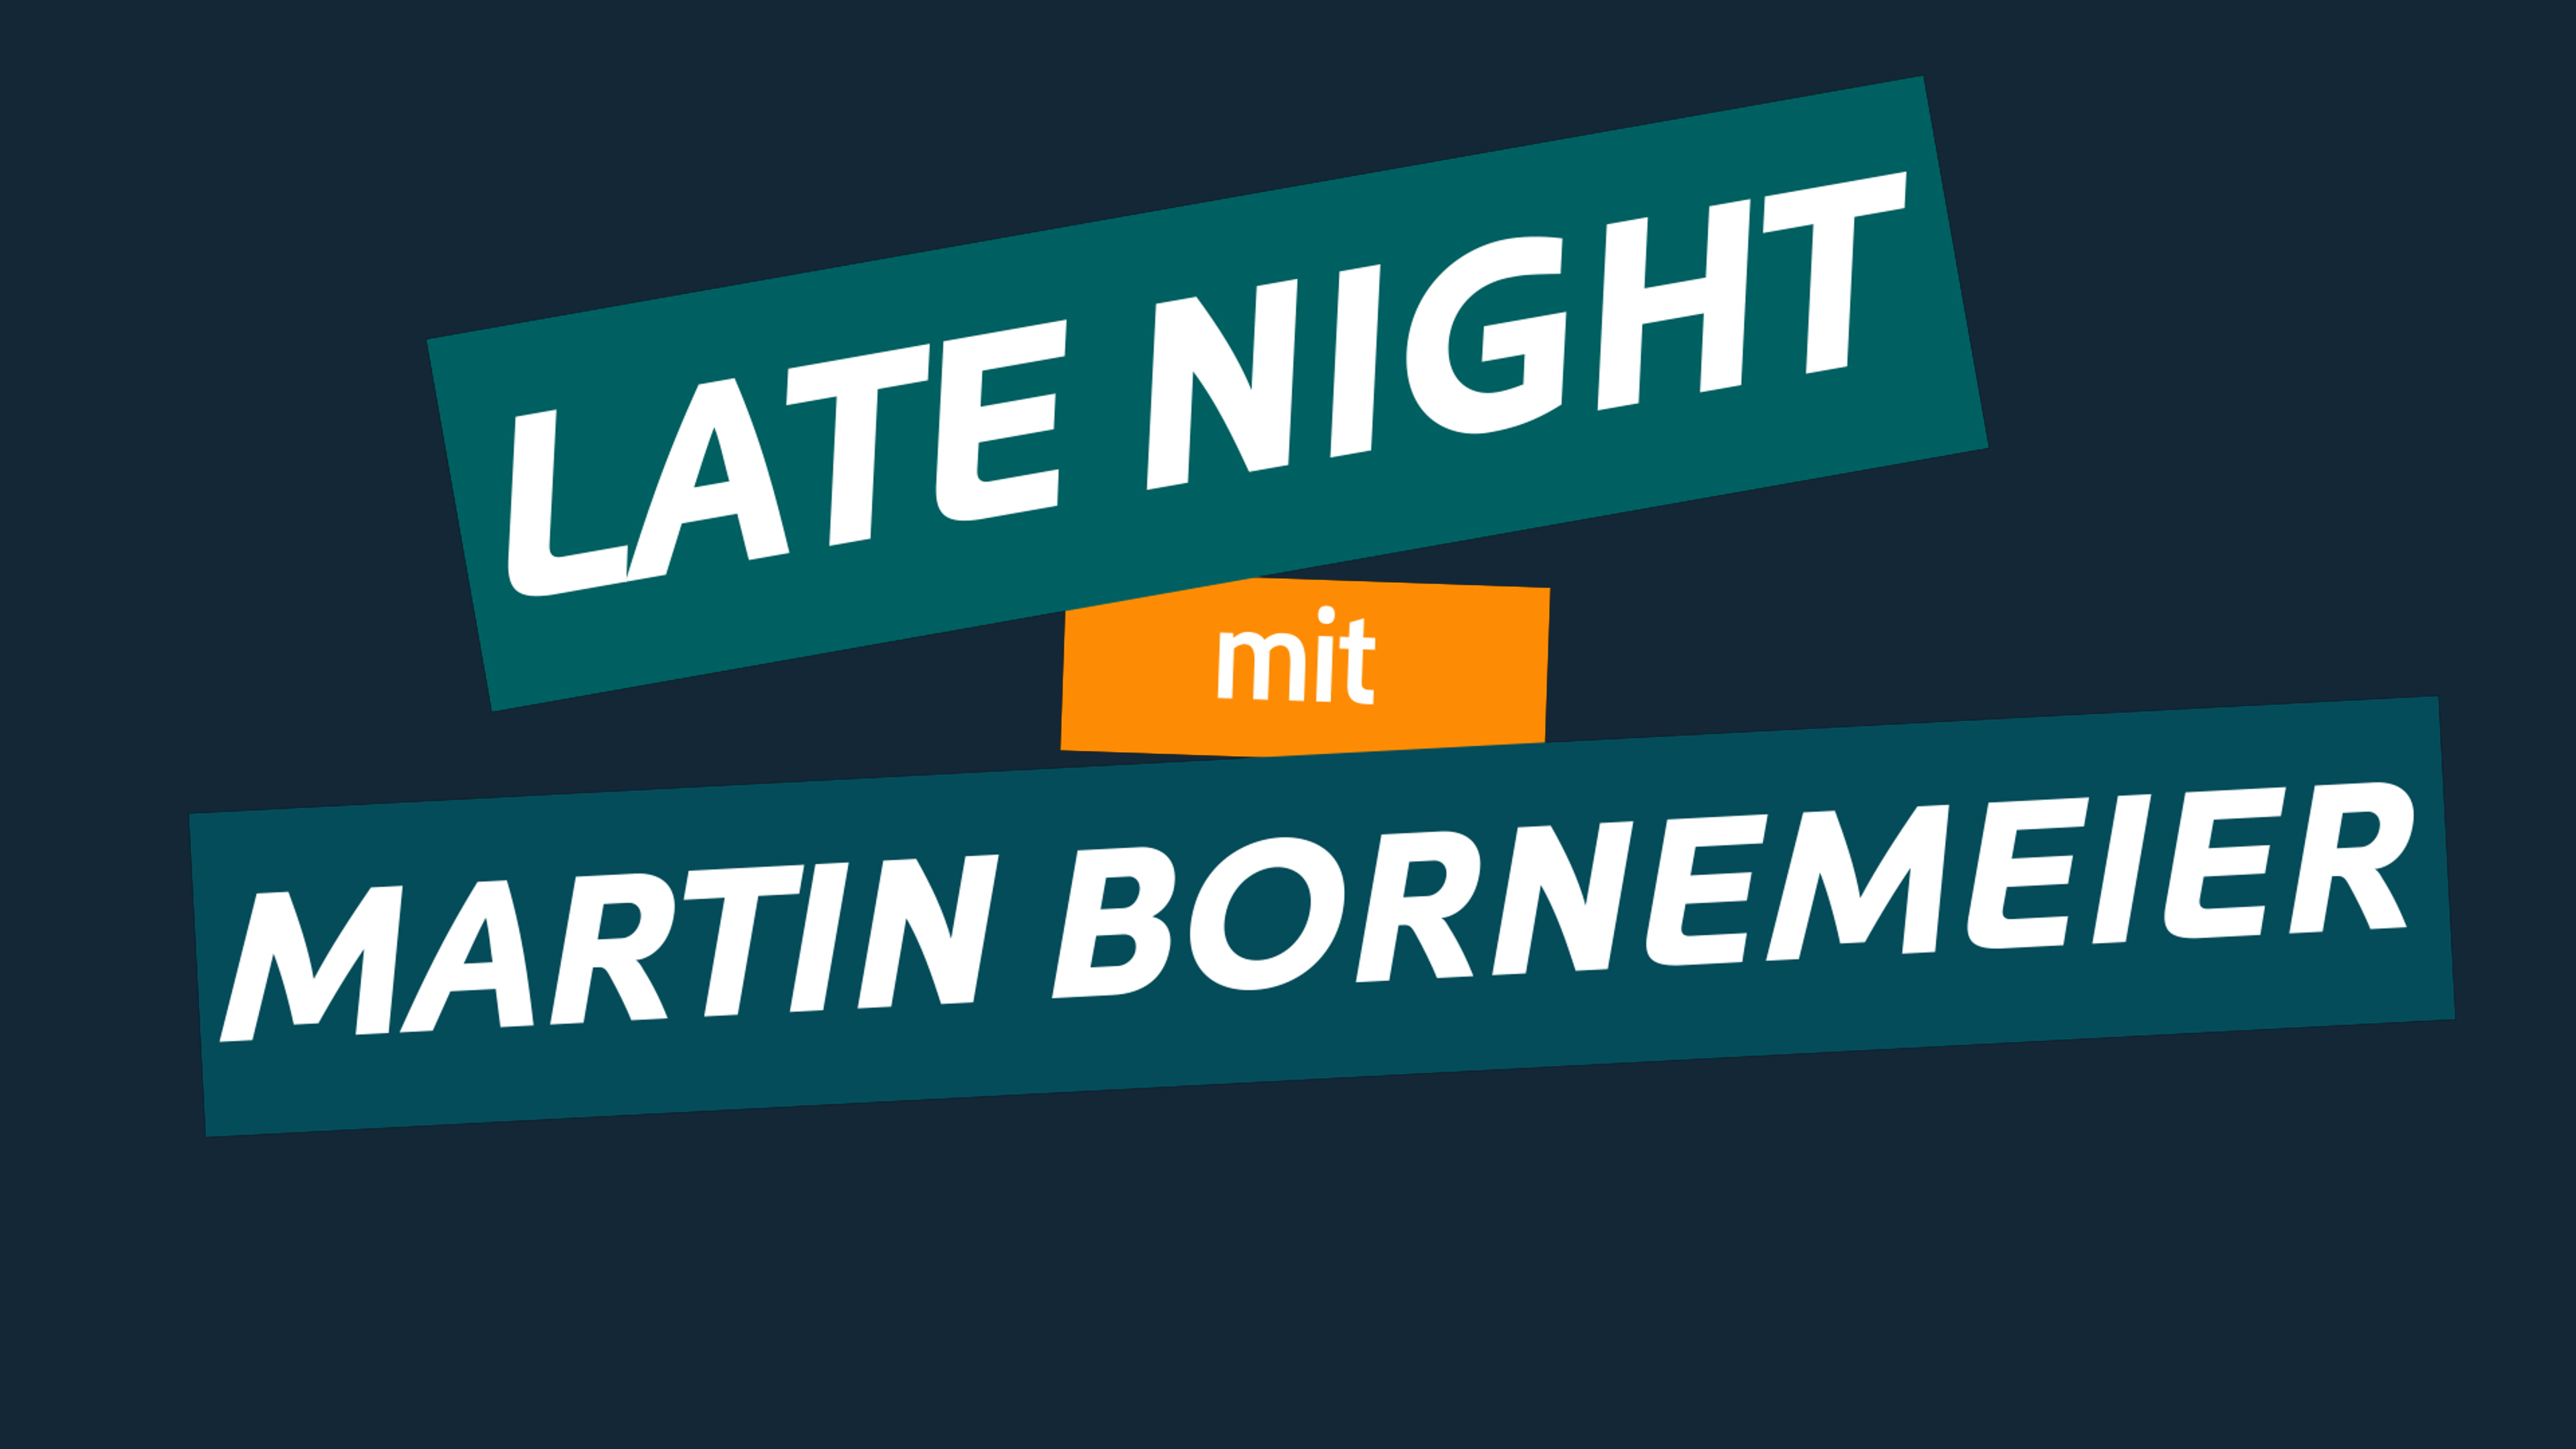 Late Night mit Martin Bornemeier - politisches Kabarett